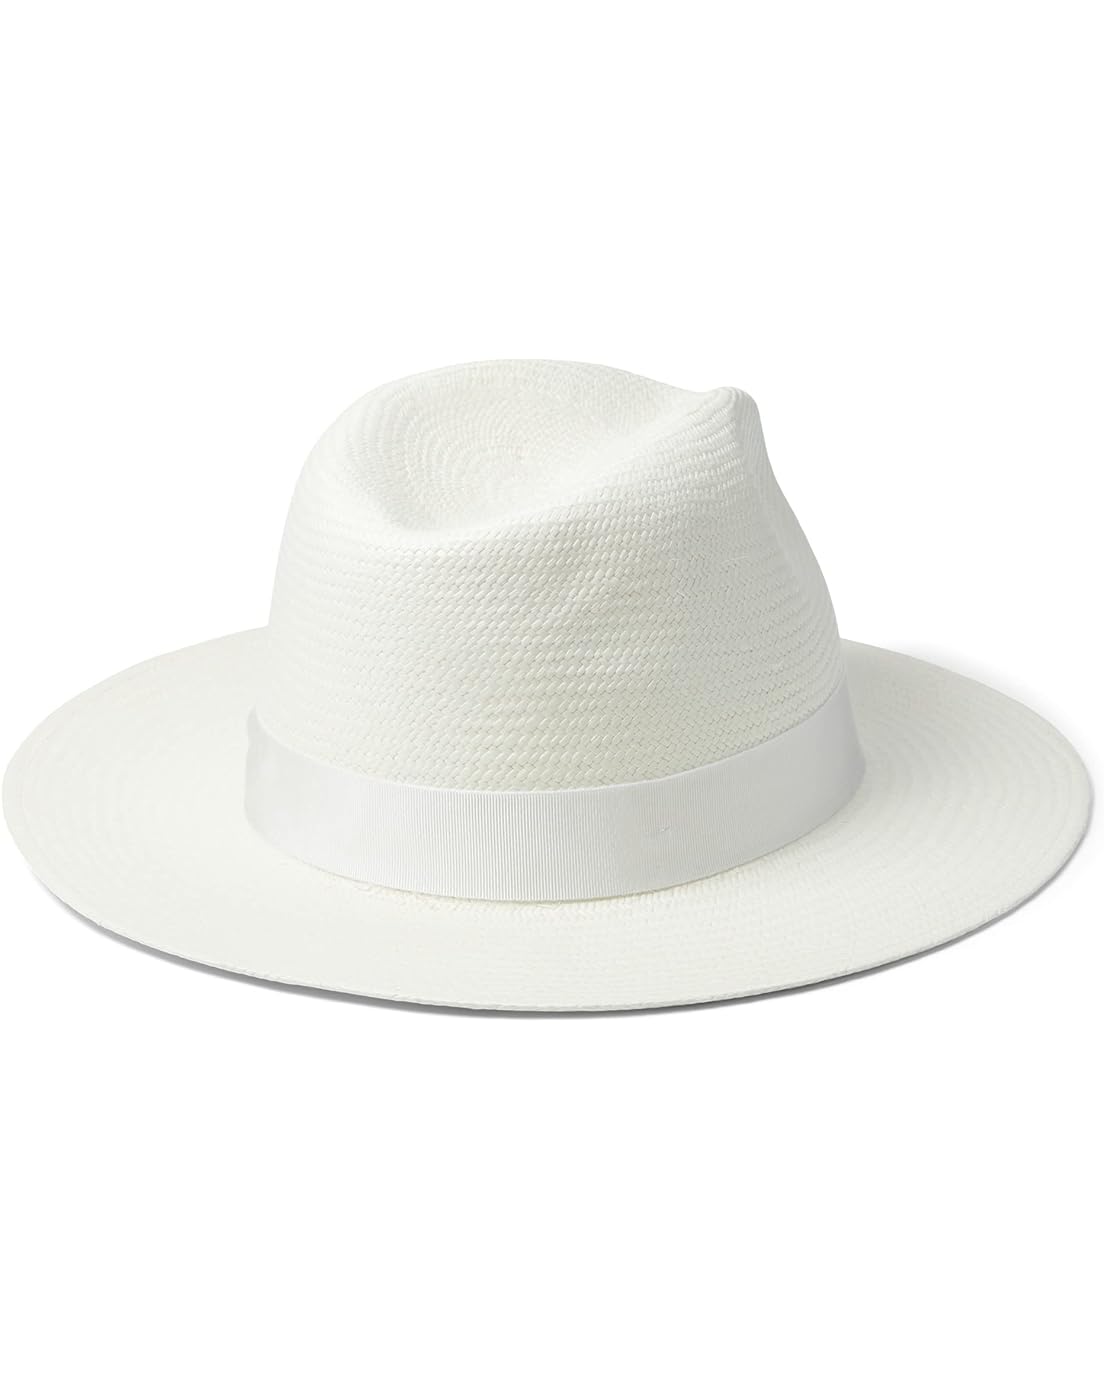  rag & bone Panama Hat